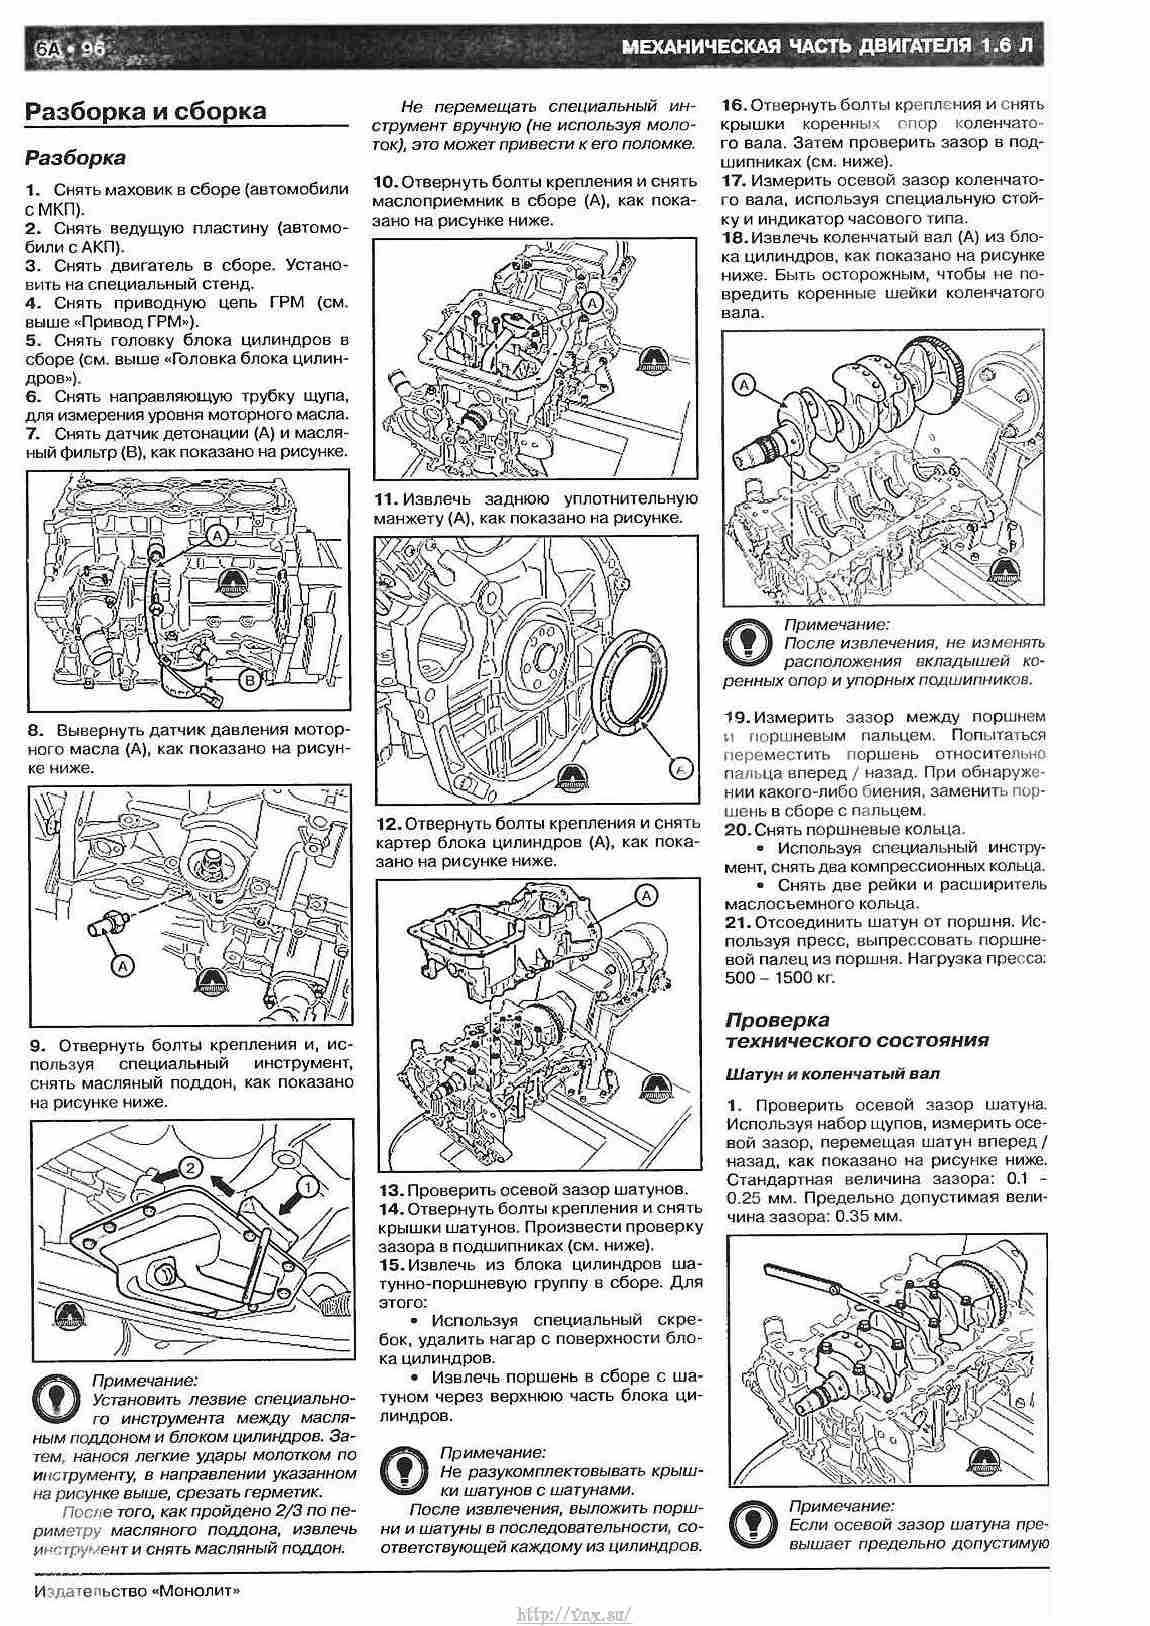 Инструкция по разборке двигателя g4fc